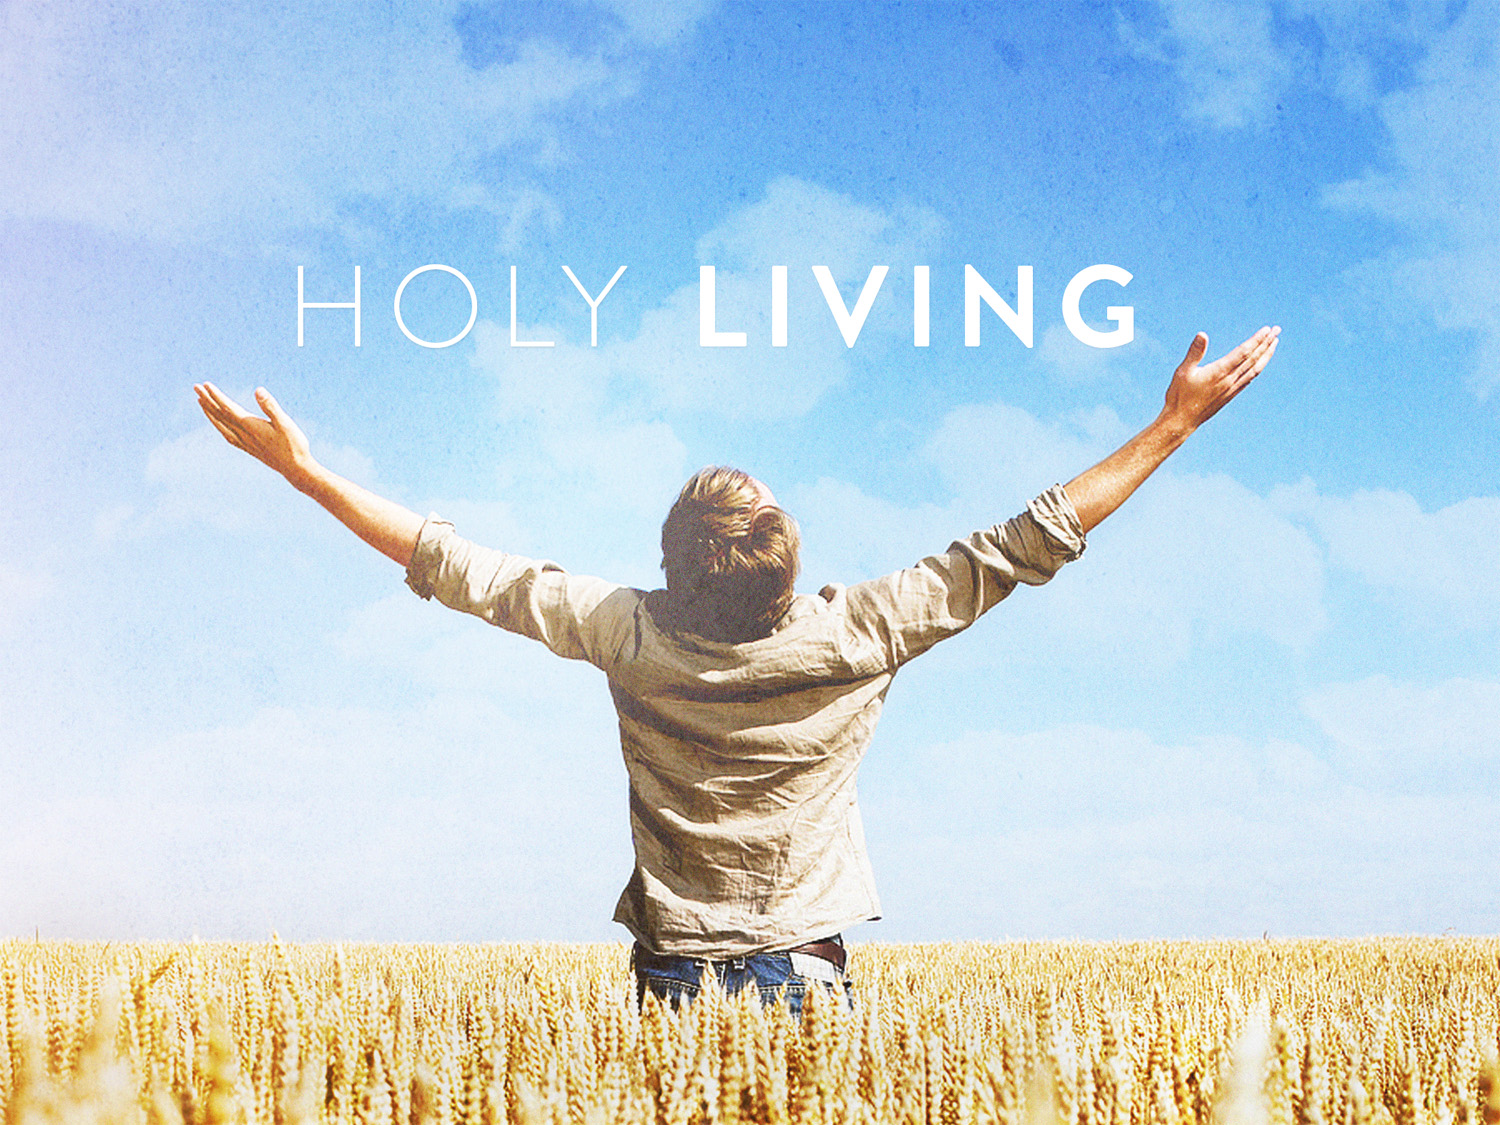 holy_living.jpg